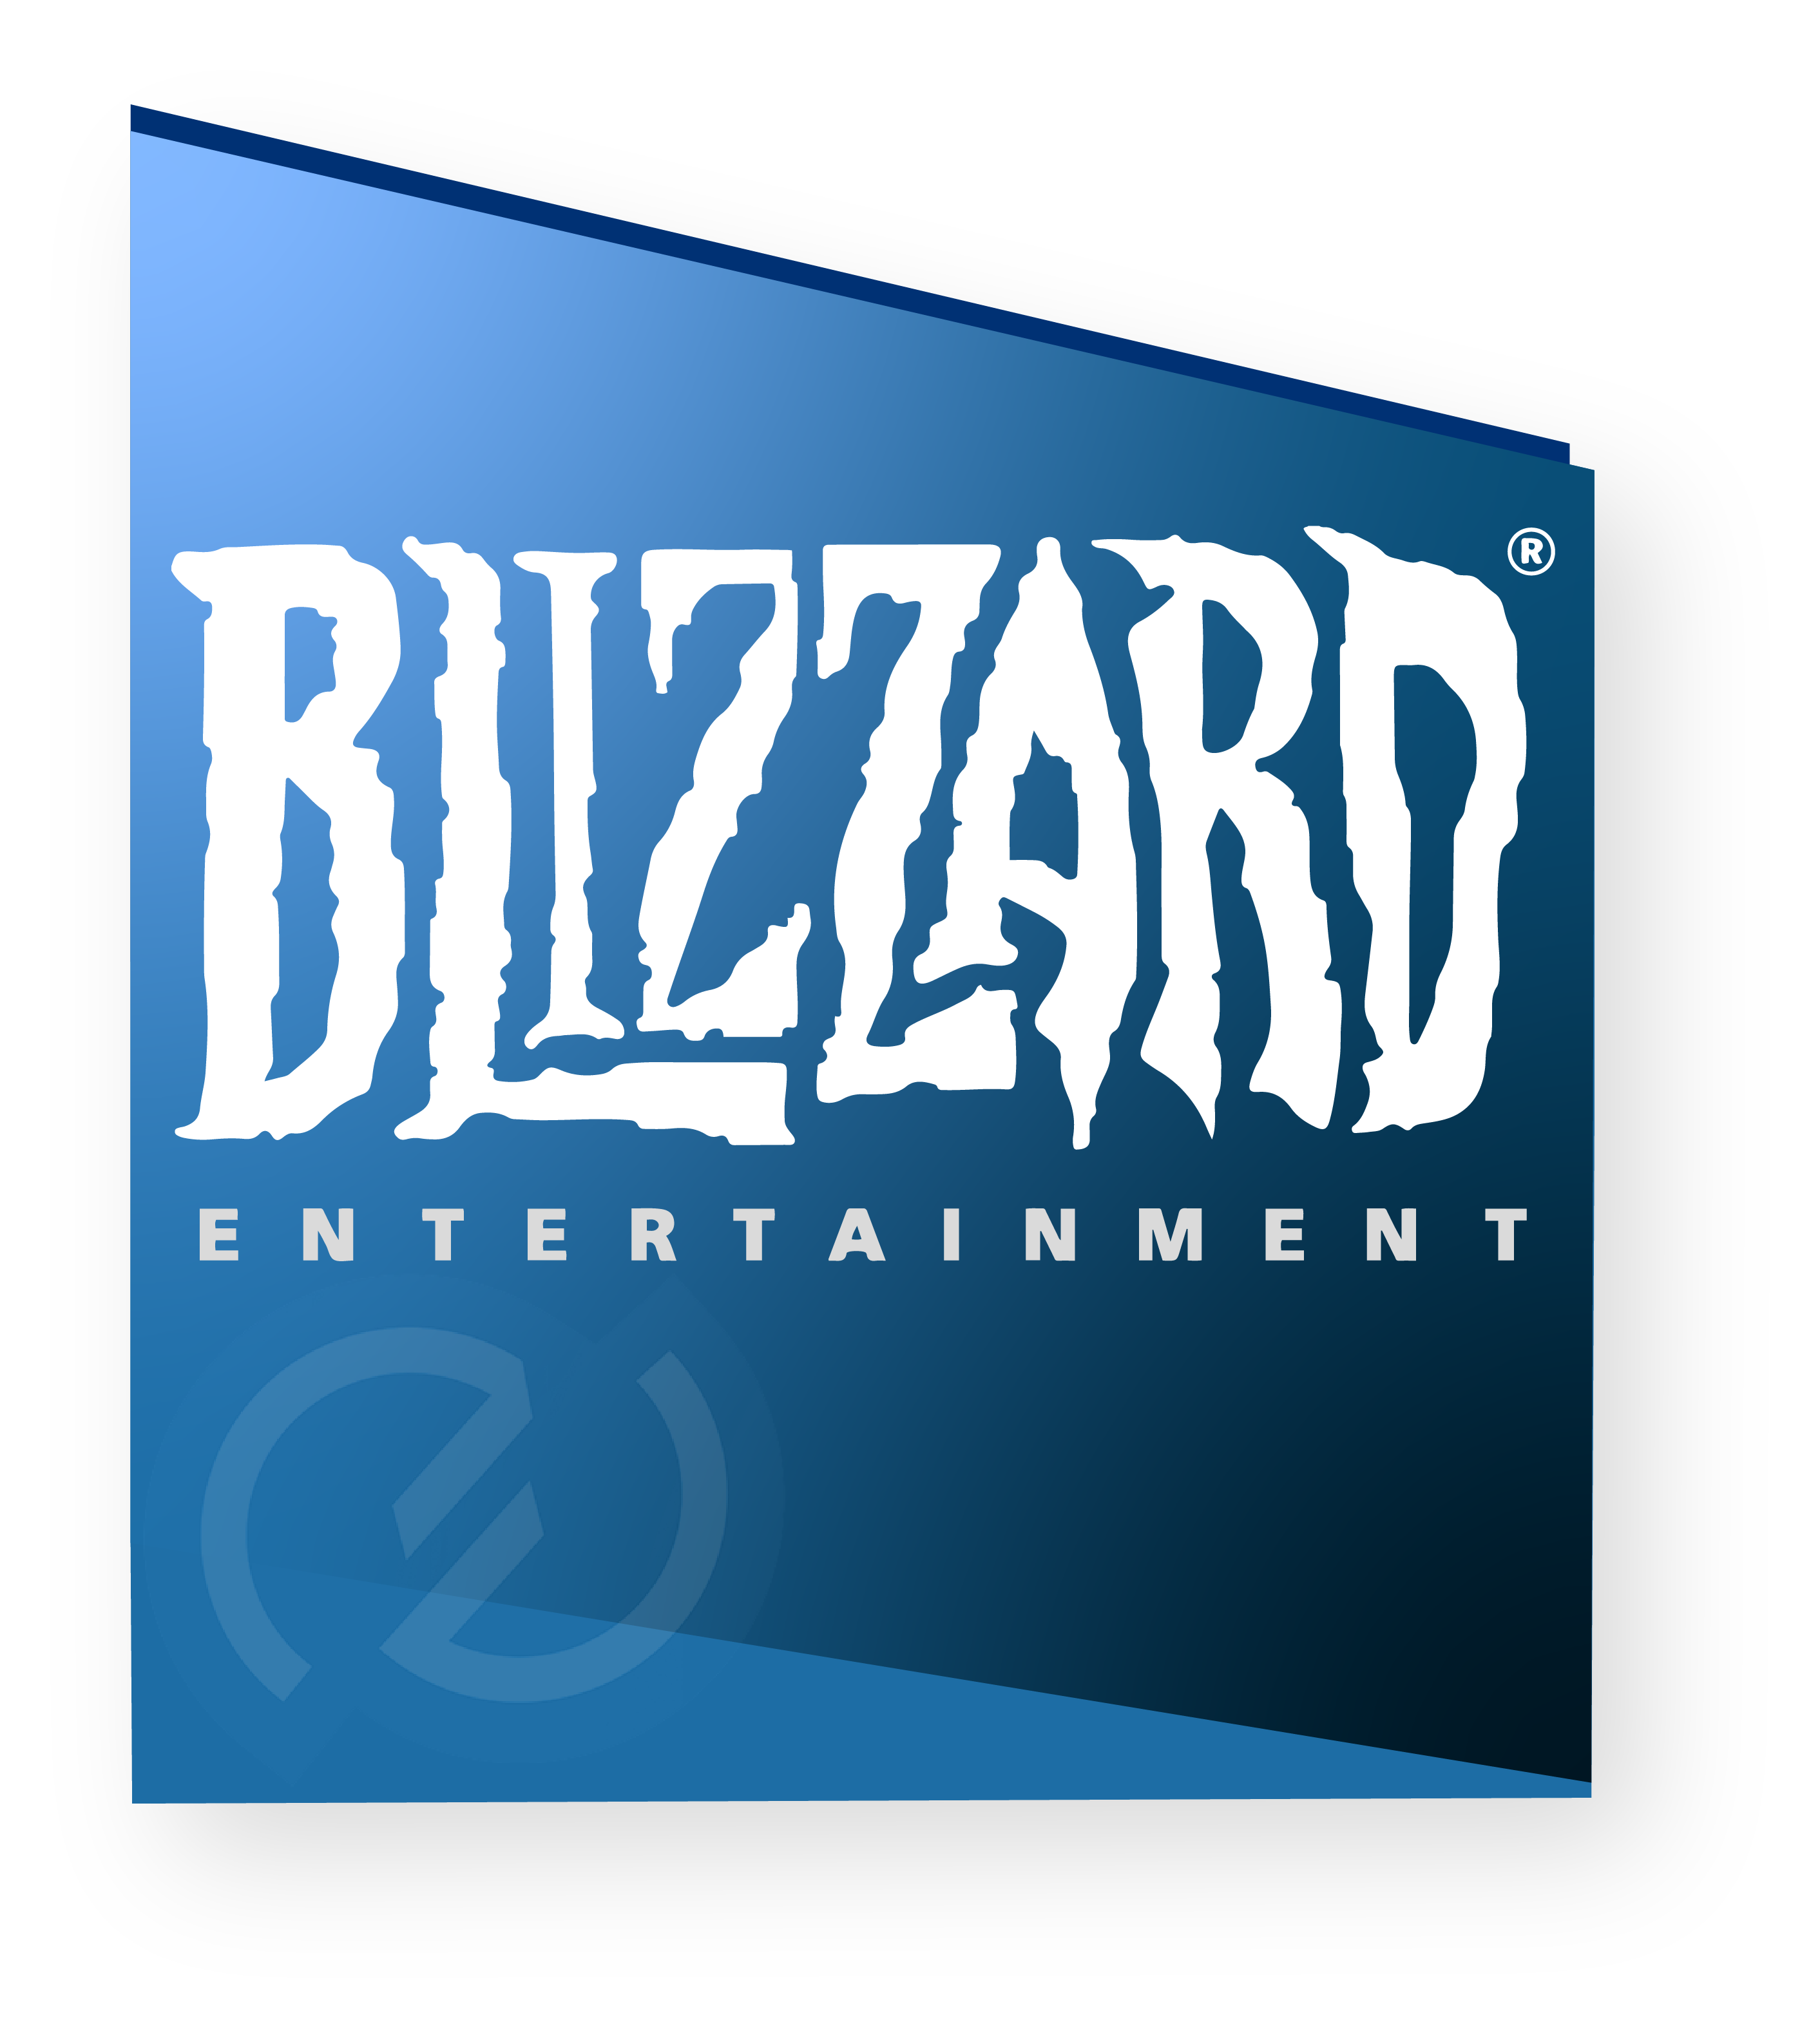 Image logo Blizzard